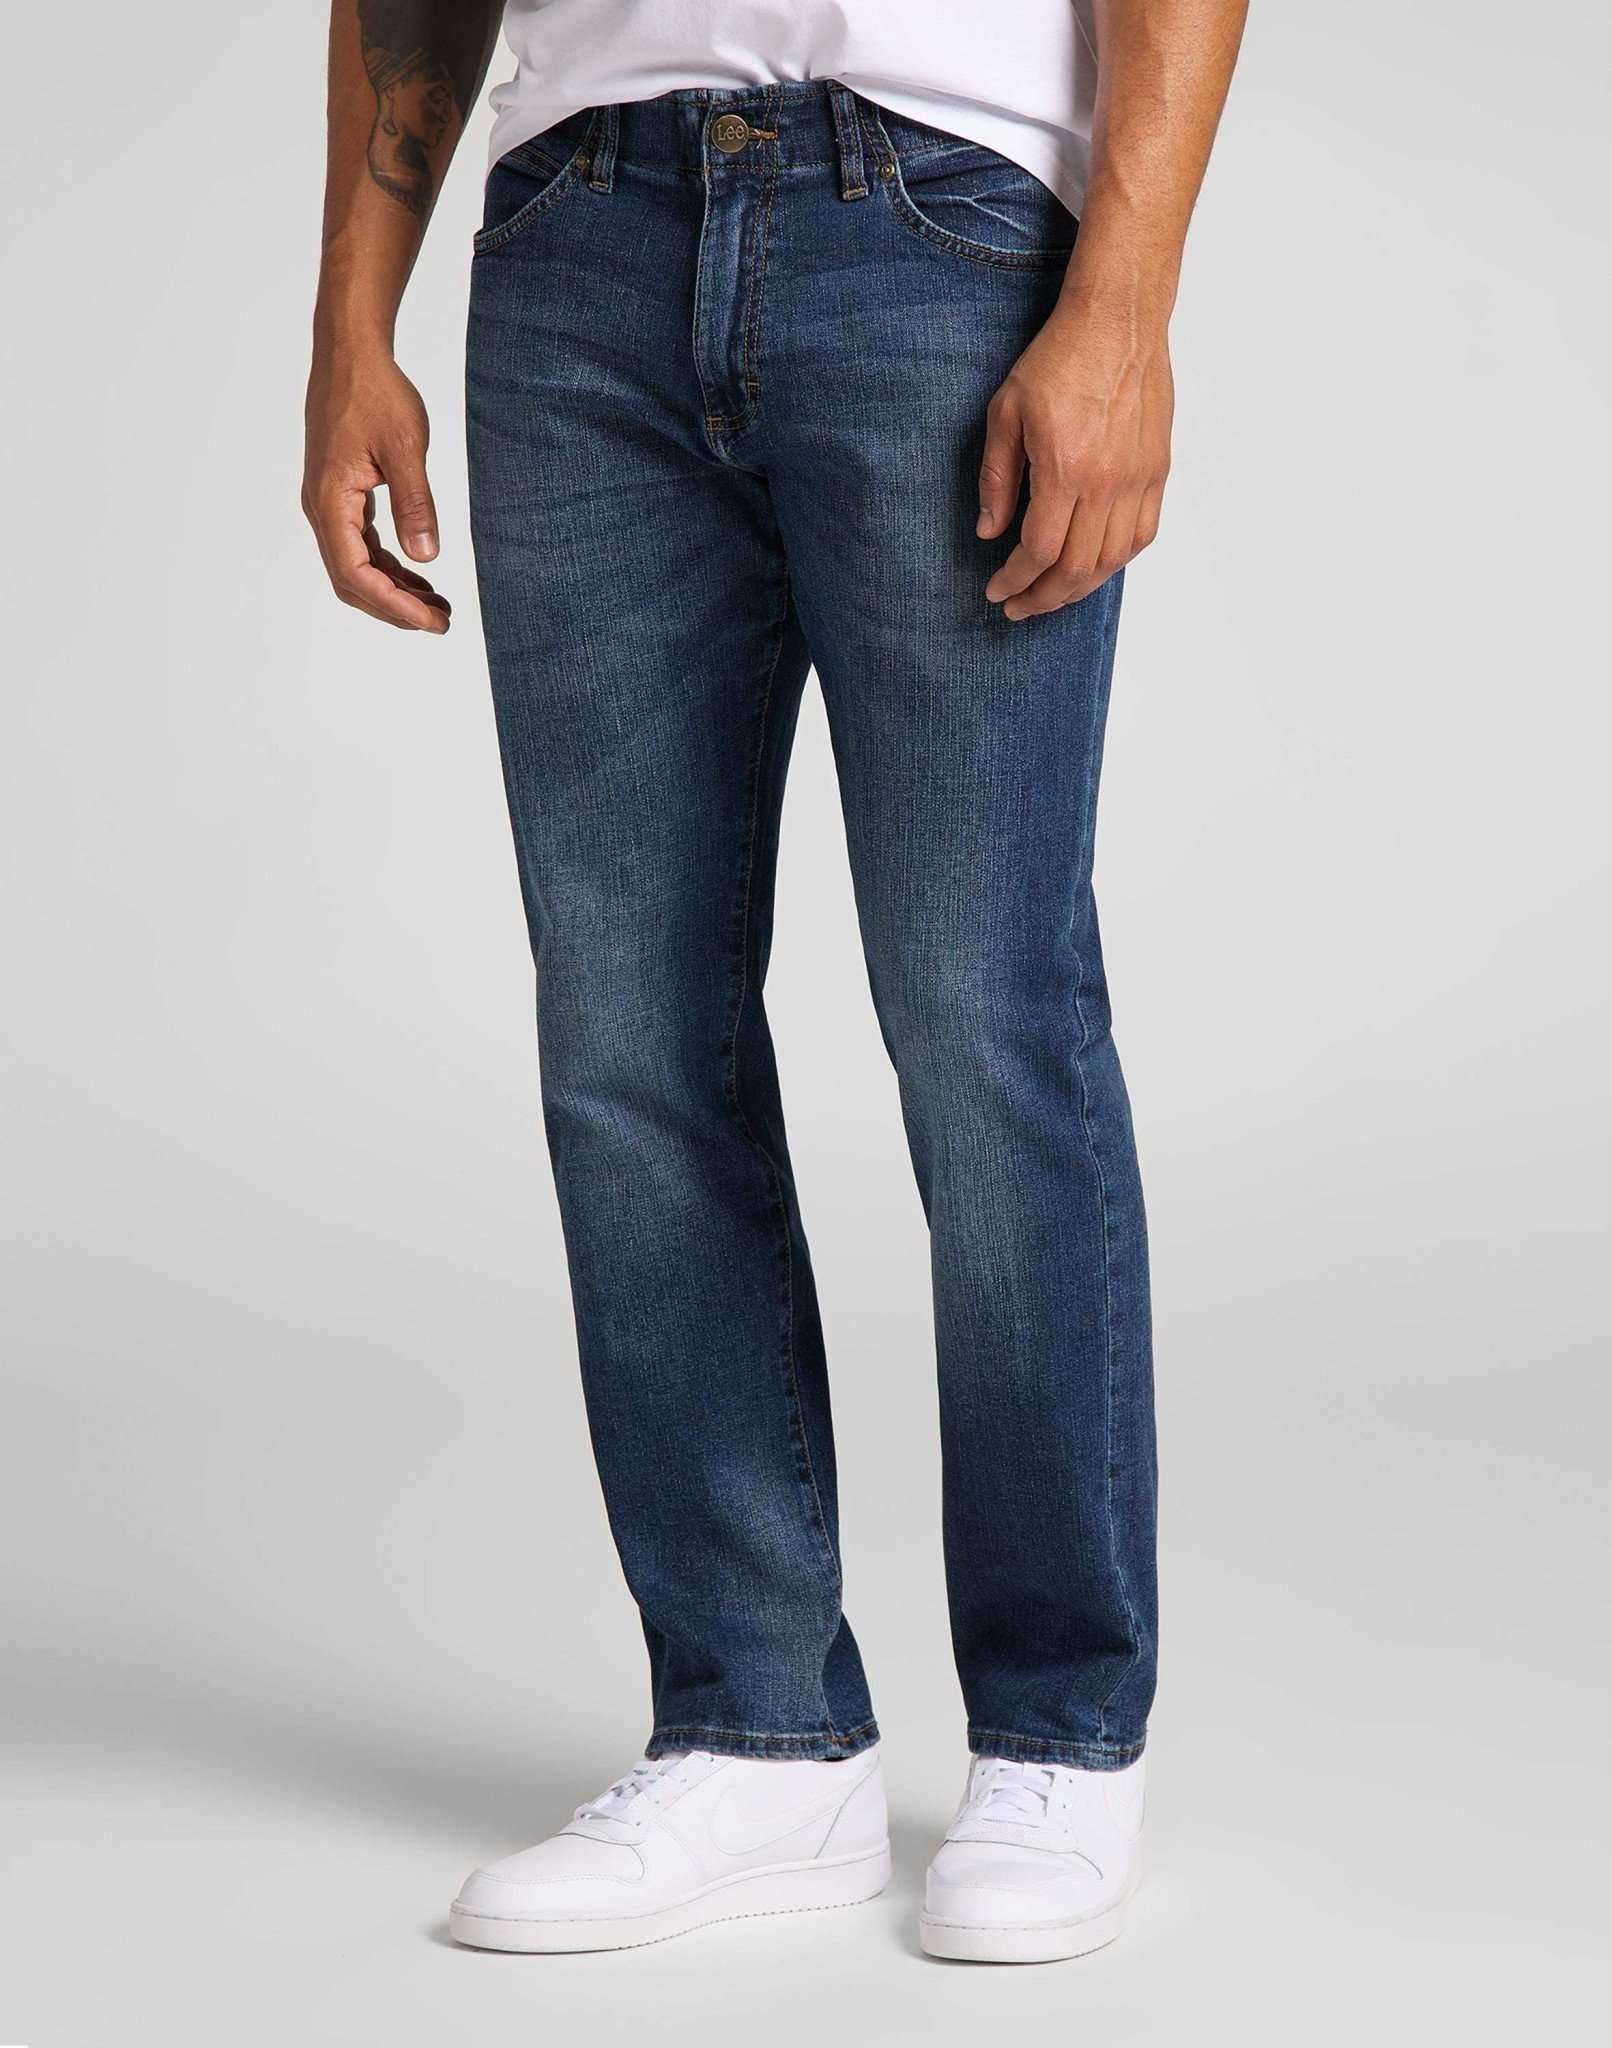 Jeans Straight Leg Xm Herren Blau Denim L34/W33 von Lee